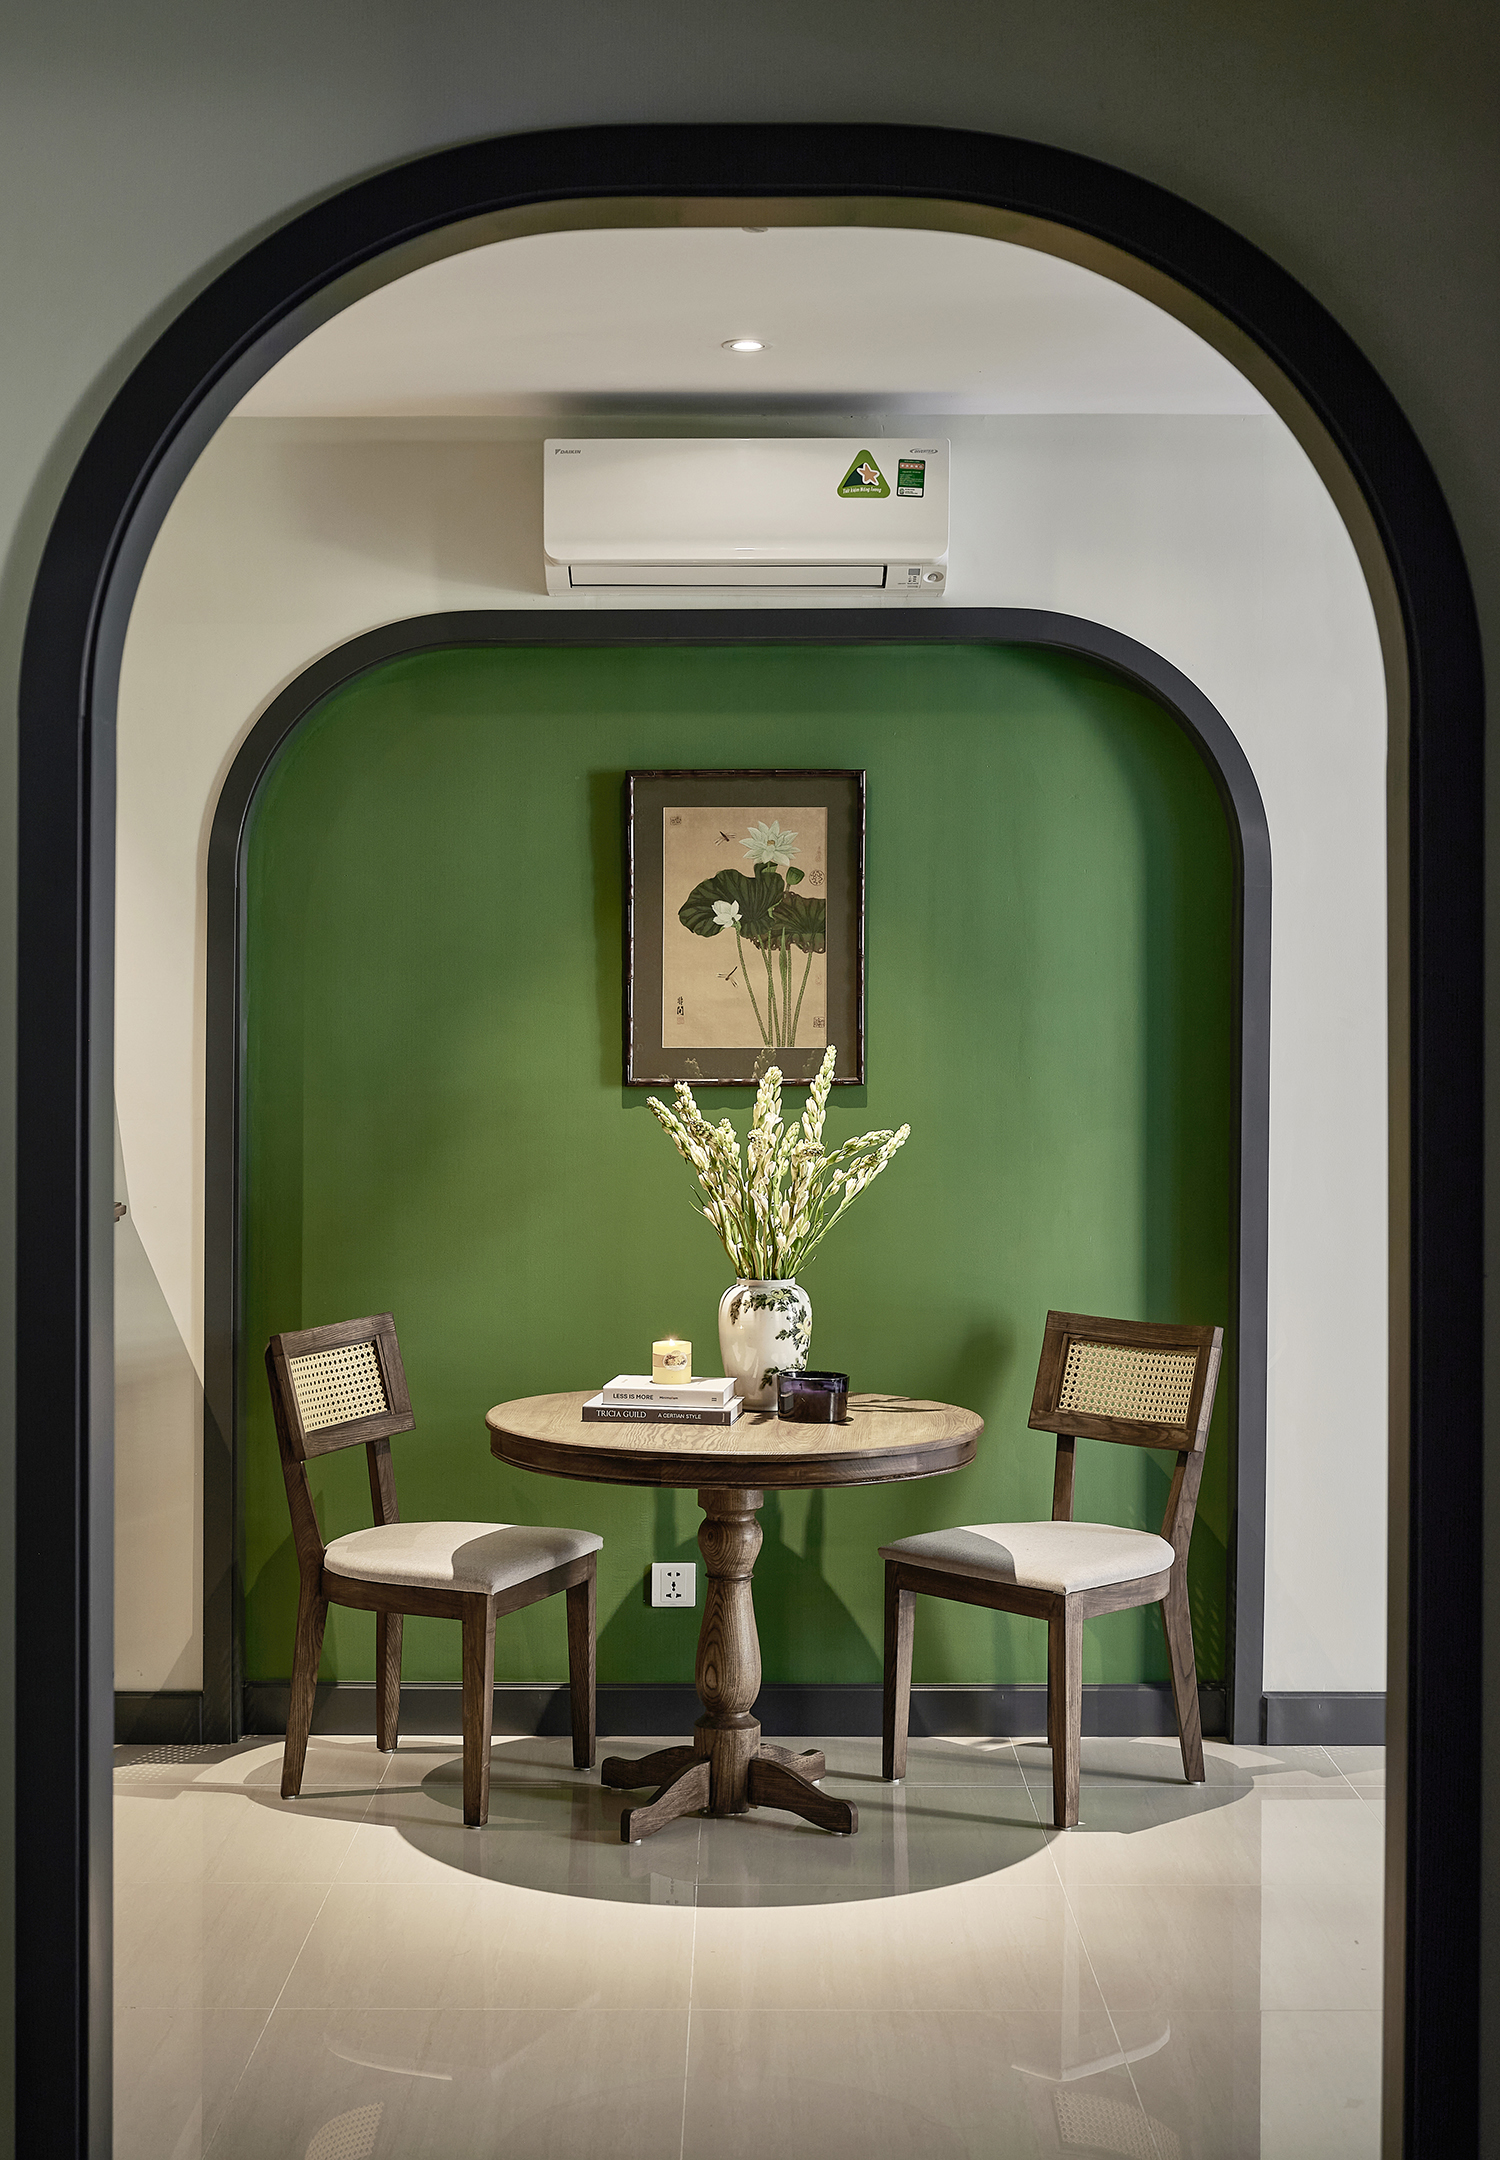  Sơn tường nhà màu xanh rêu: Tưởng nhạt nhòa nhưng đẹp ngất ngây